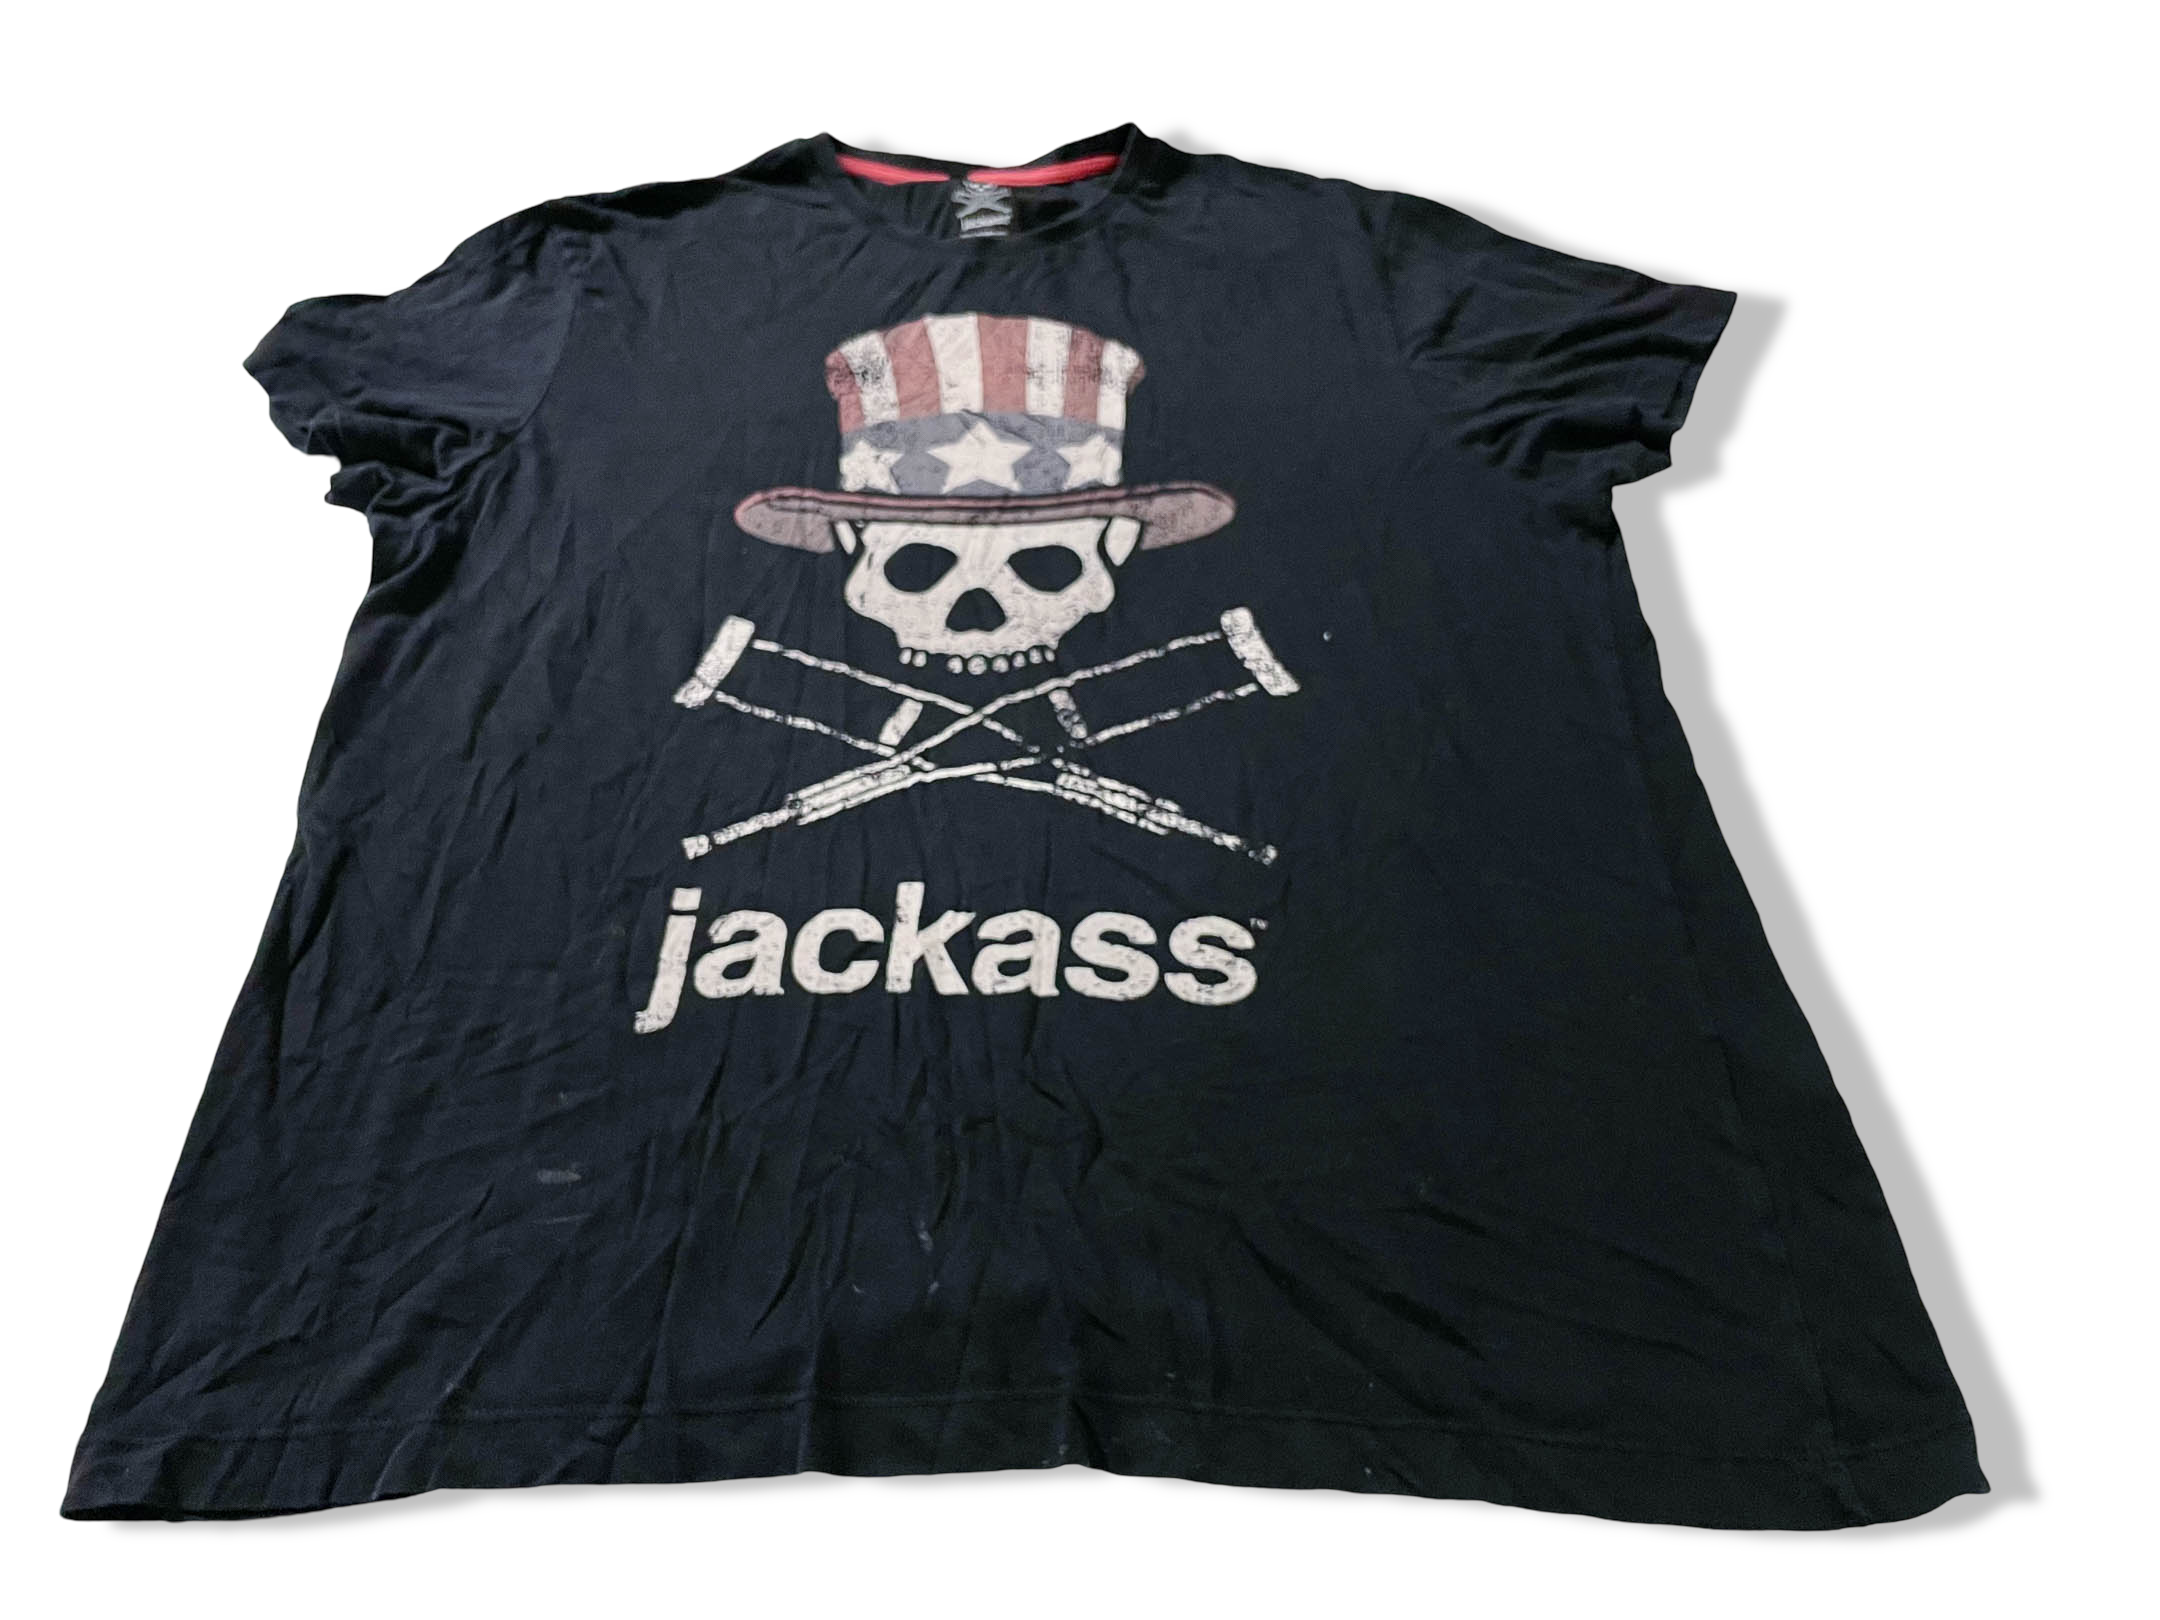 Vintage Men's Jackass Graphics black tees in XL|L31 W23|SKU 4107